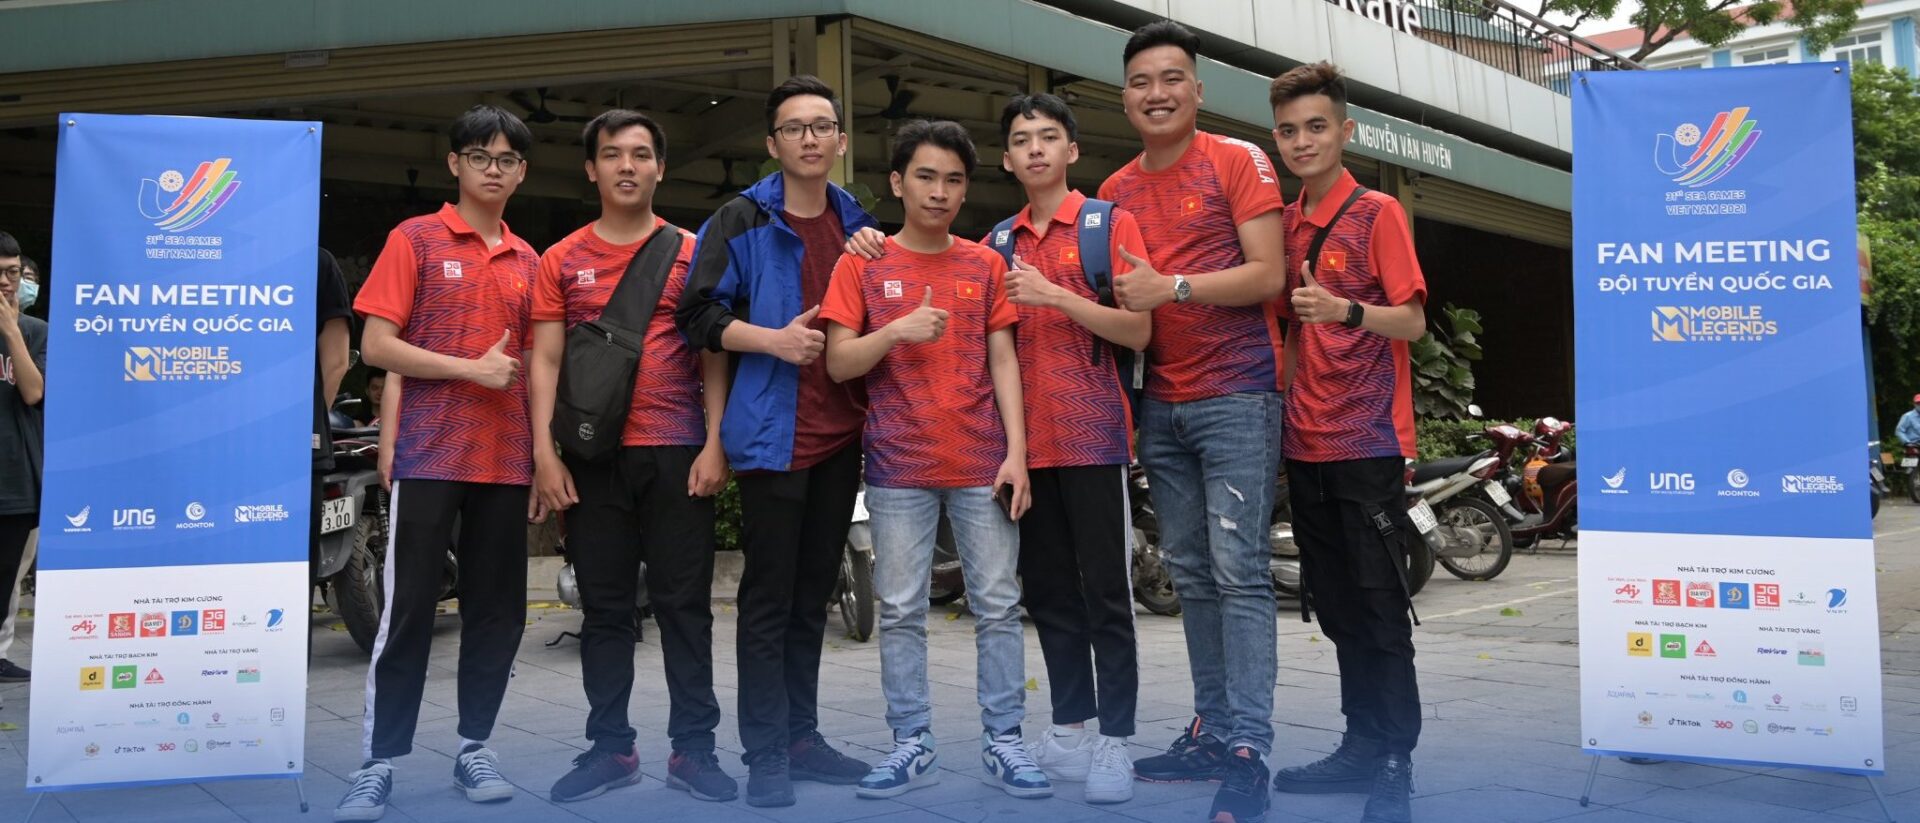 SEA Games 31: Trực tiếp thi đấu Mobile Legends: Bang Bang - Cơ hội nào cho tuyển Việt Nam?